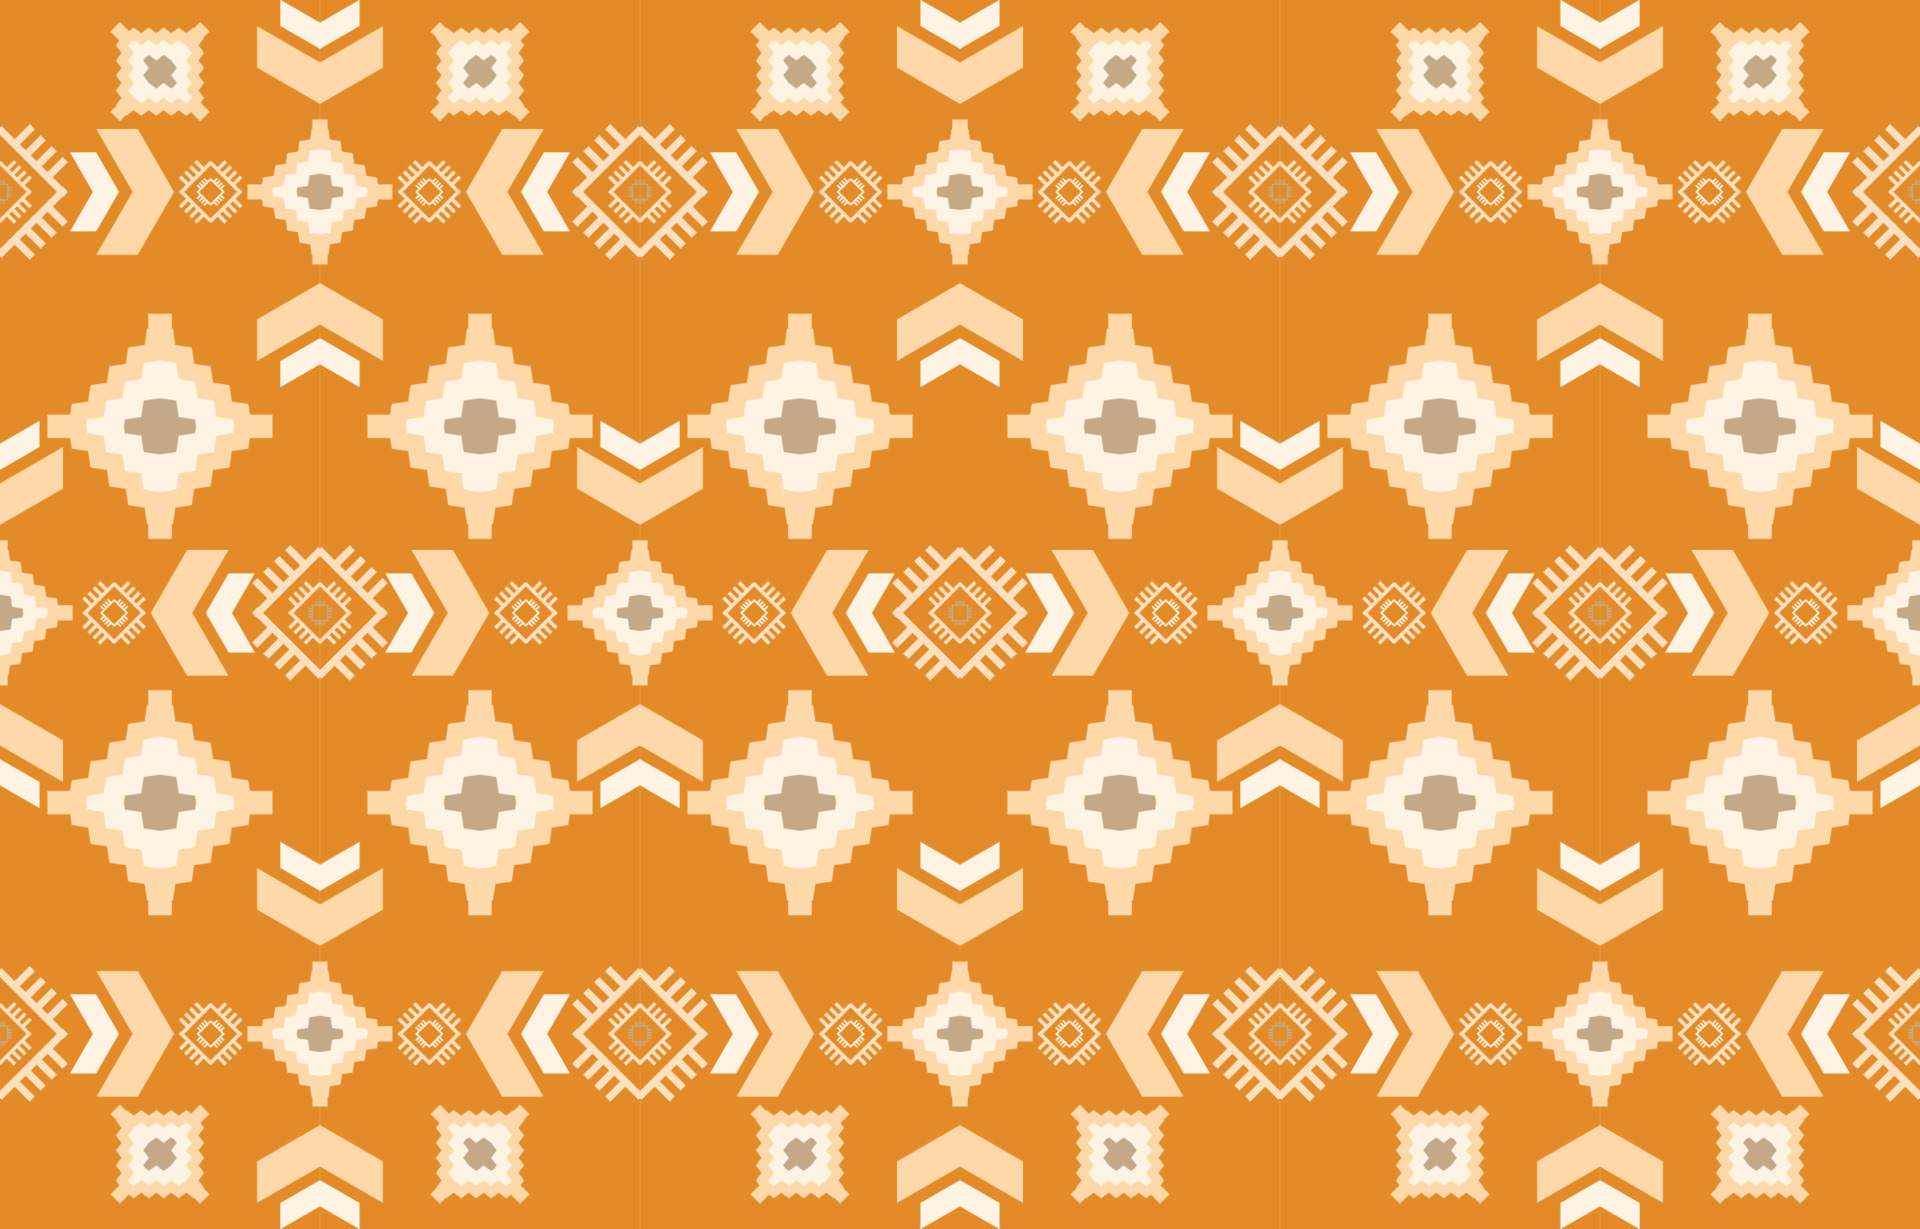 Chất liệu vải Navajo là sự lựa chọn hoàn hảo để tạo ra các sản phẩm thời trang đa dạng. Hãy xem hình ảnh để khám phá cách sử dụng chất liệu vải Navajo và những họa tiết đặc trưng của nó trong thiết kế.